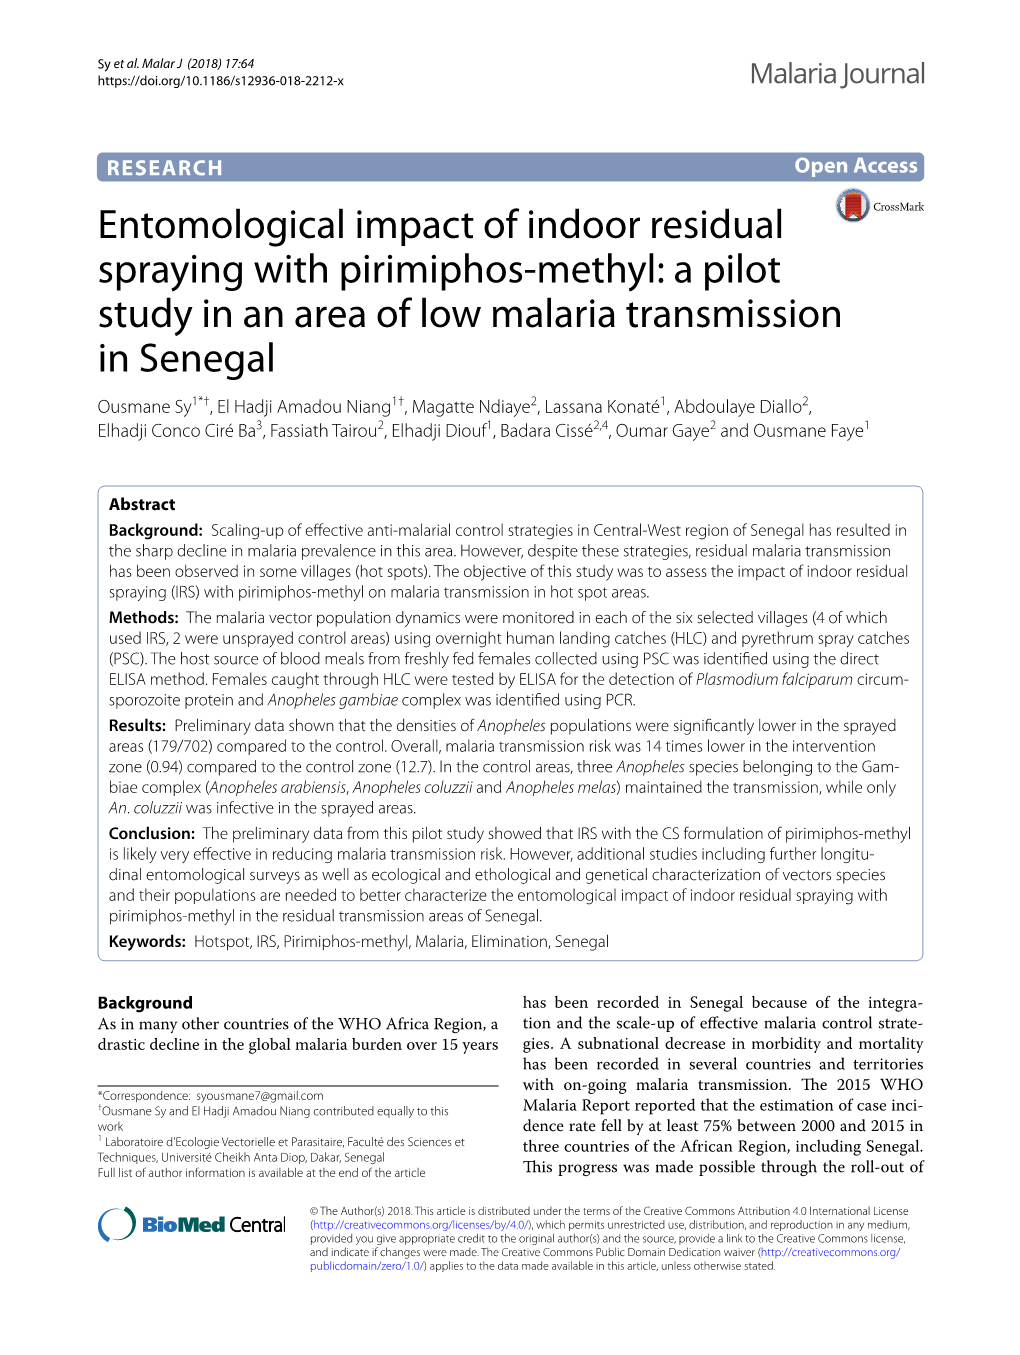 Entomological Impact of Indoor Residual Spraying with Pirimiphos